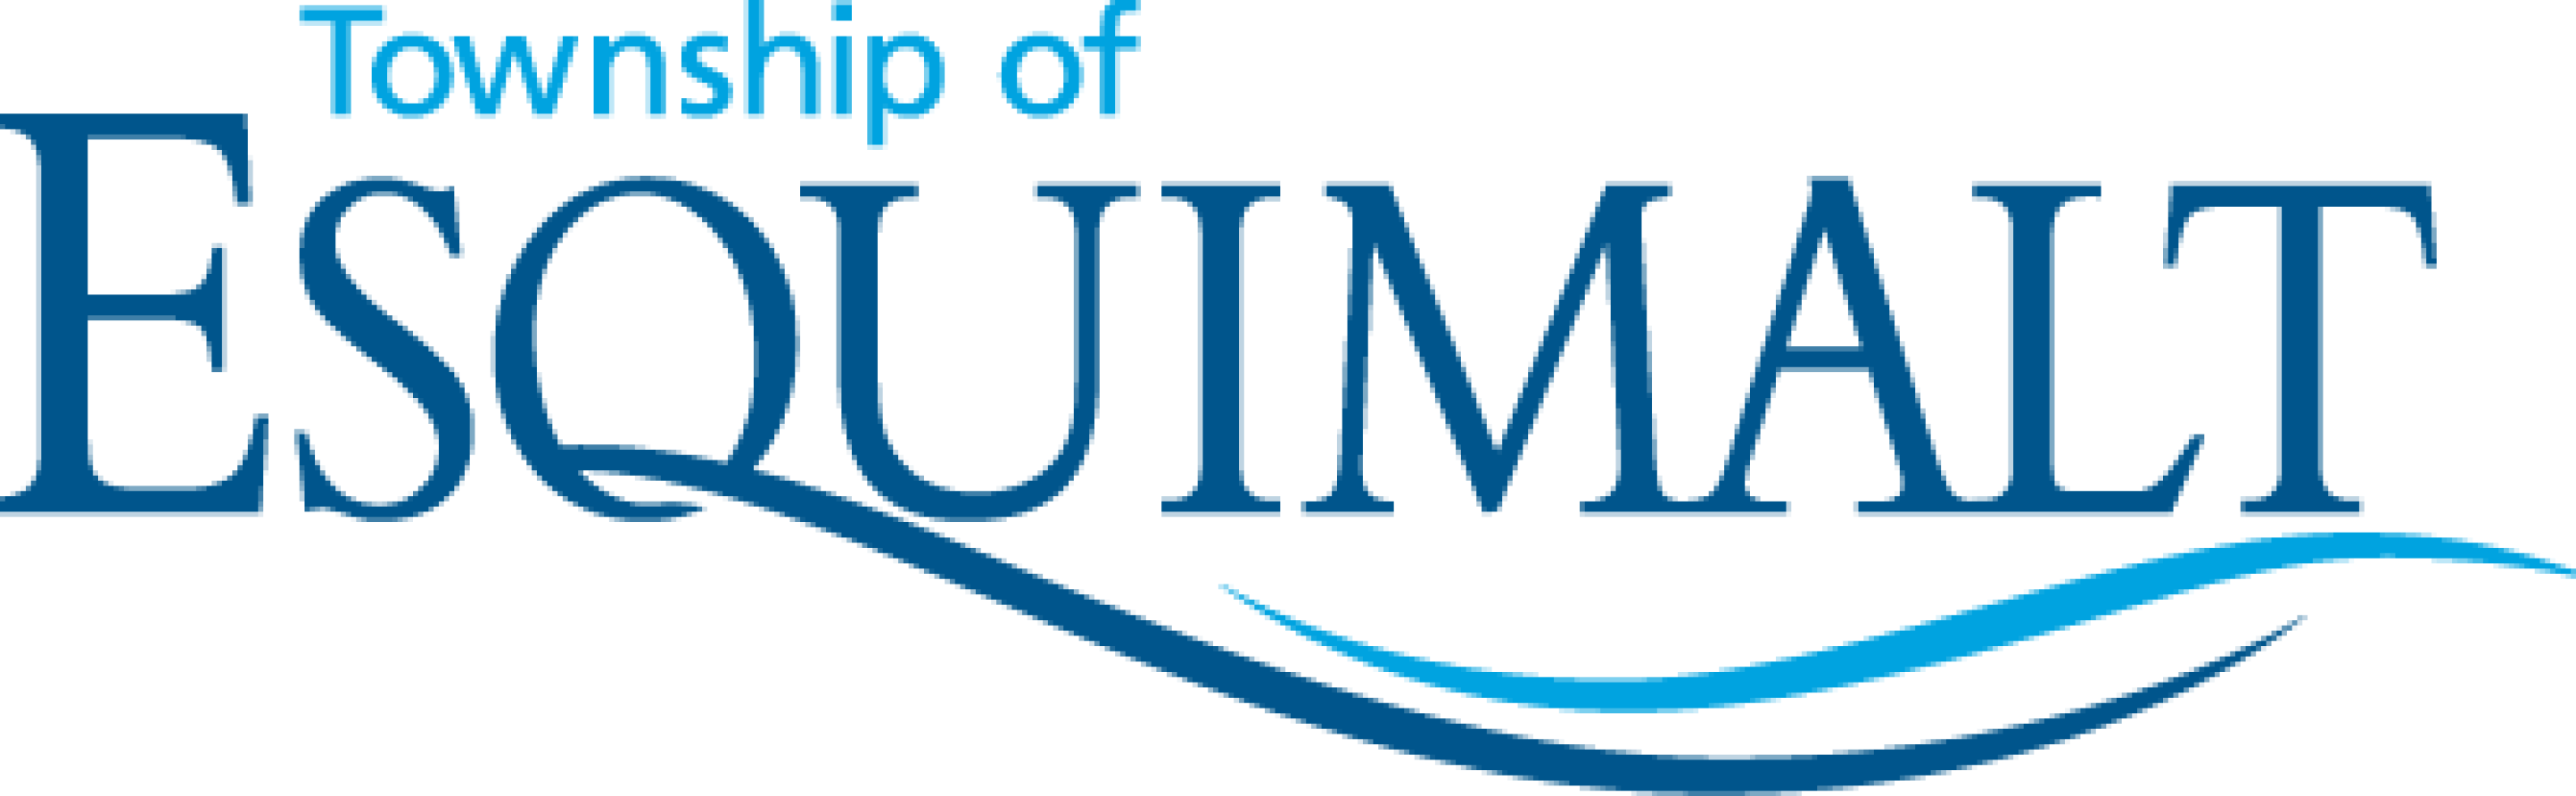 Esquimalt-logo